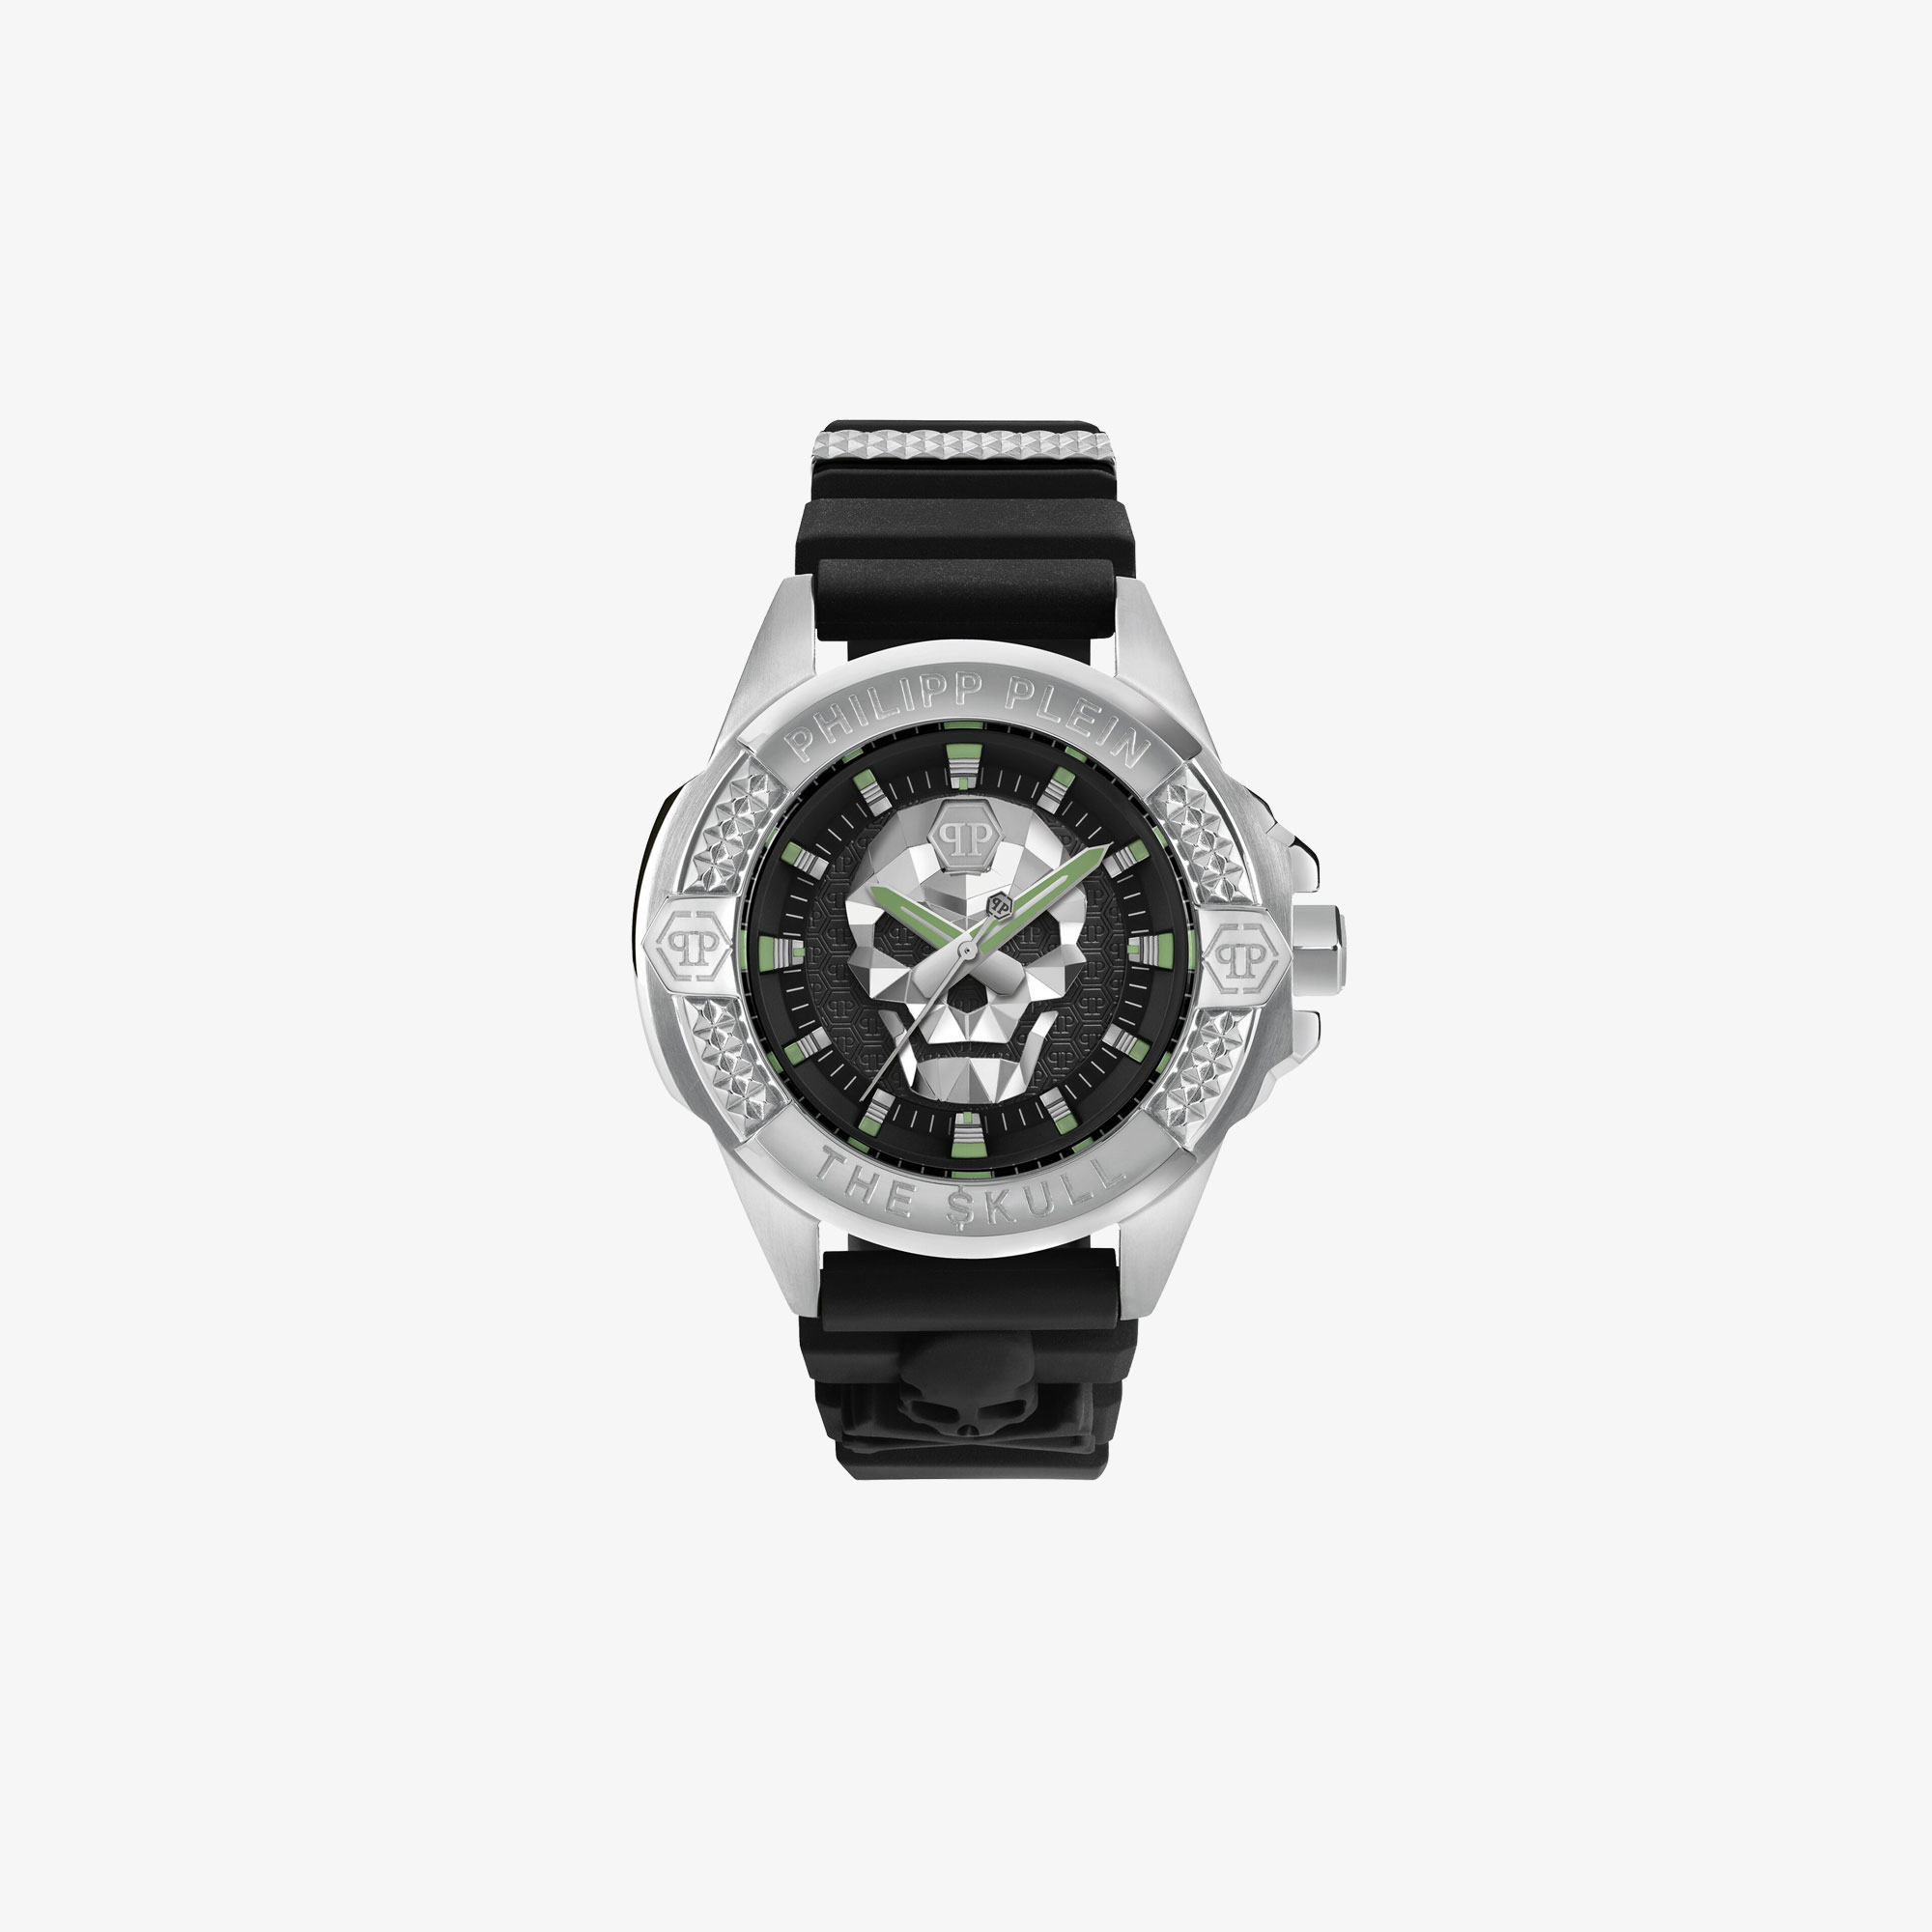 Ανδρικό ρολόι Philipp Plein "The Skull"